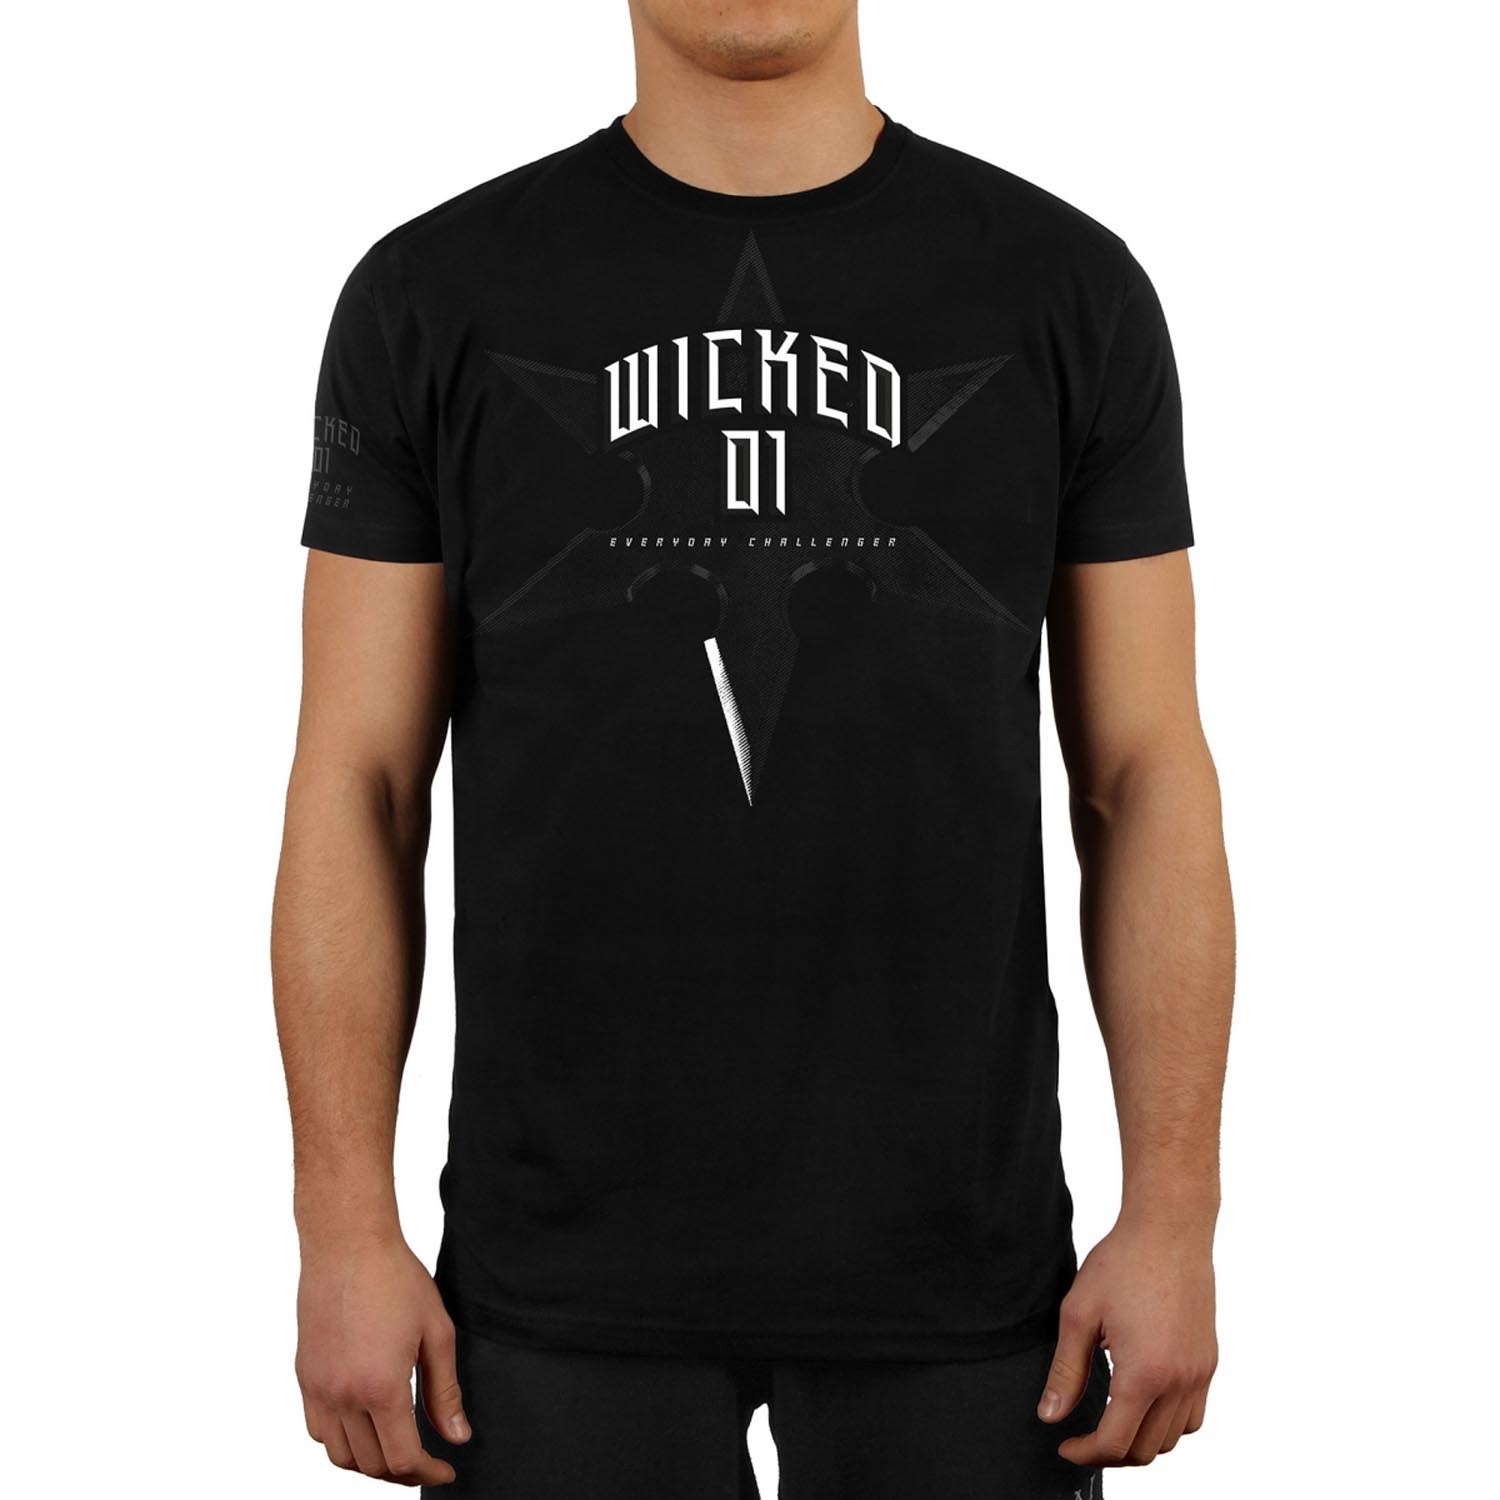 Wicked One T-Shirt, Shuriken, schwarz, XL